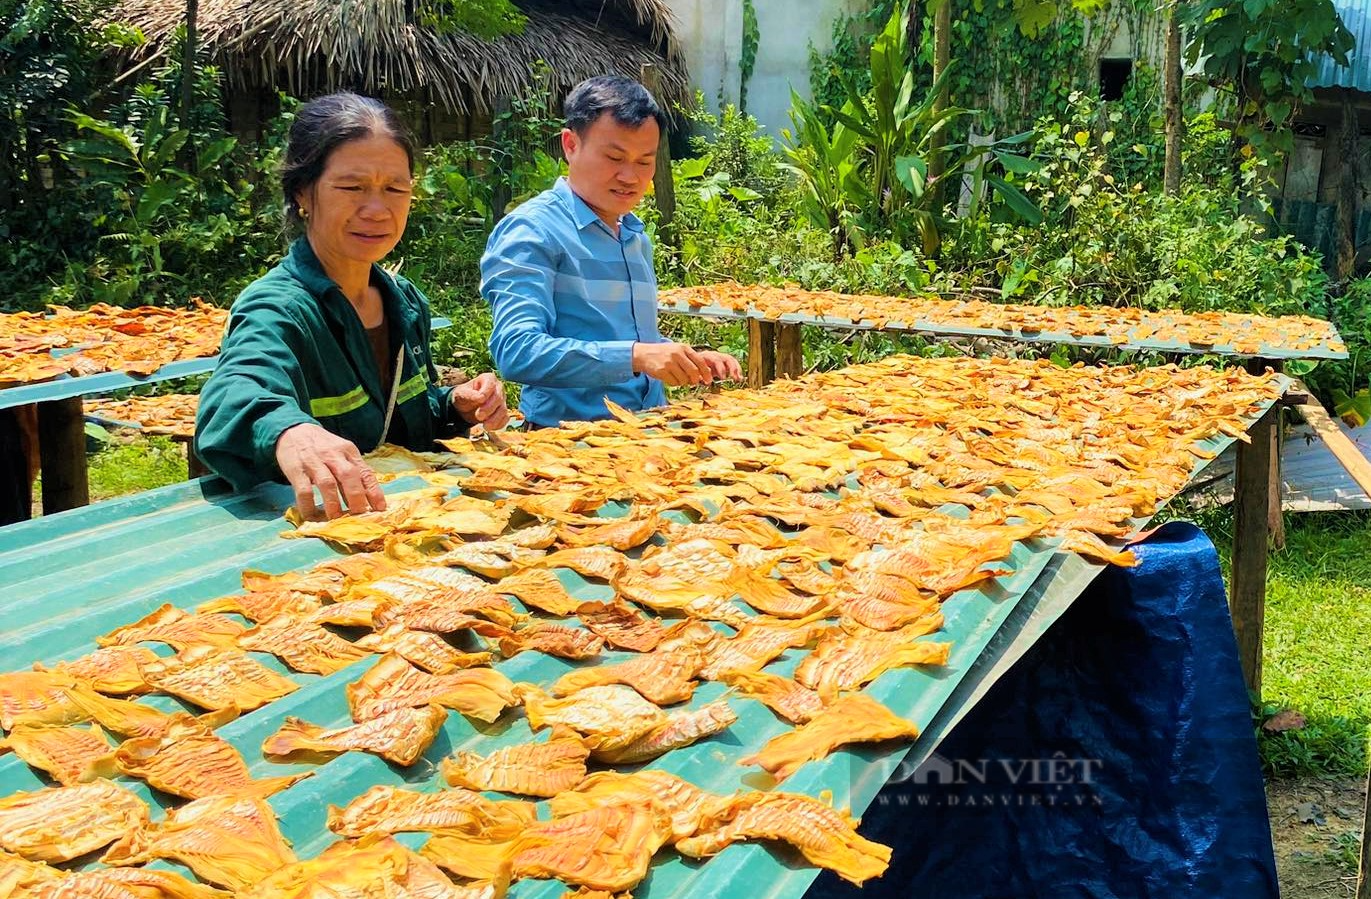 Phụ nữ vùng cao Nghệ An hái loại lộc rừng ăn ngon miệng, về xuôi nhà nào cũng tranh nhau mua - Ảnh 6.